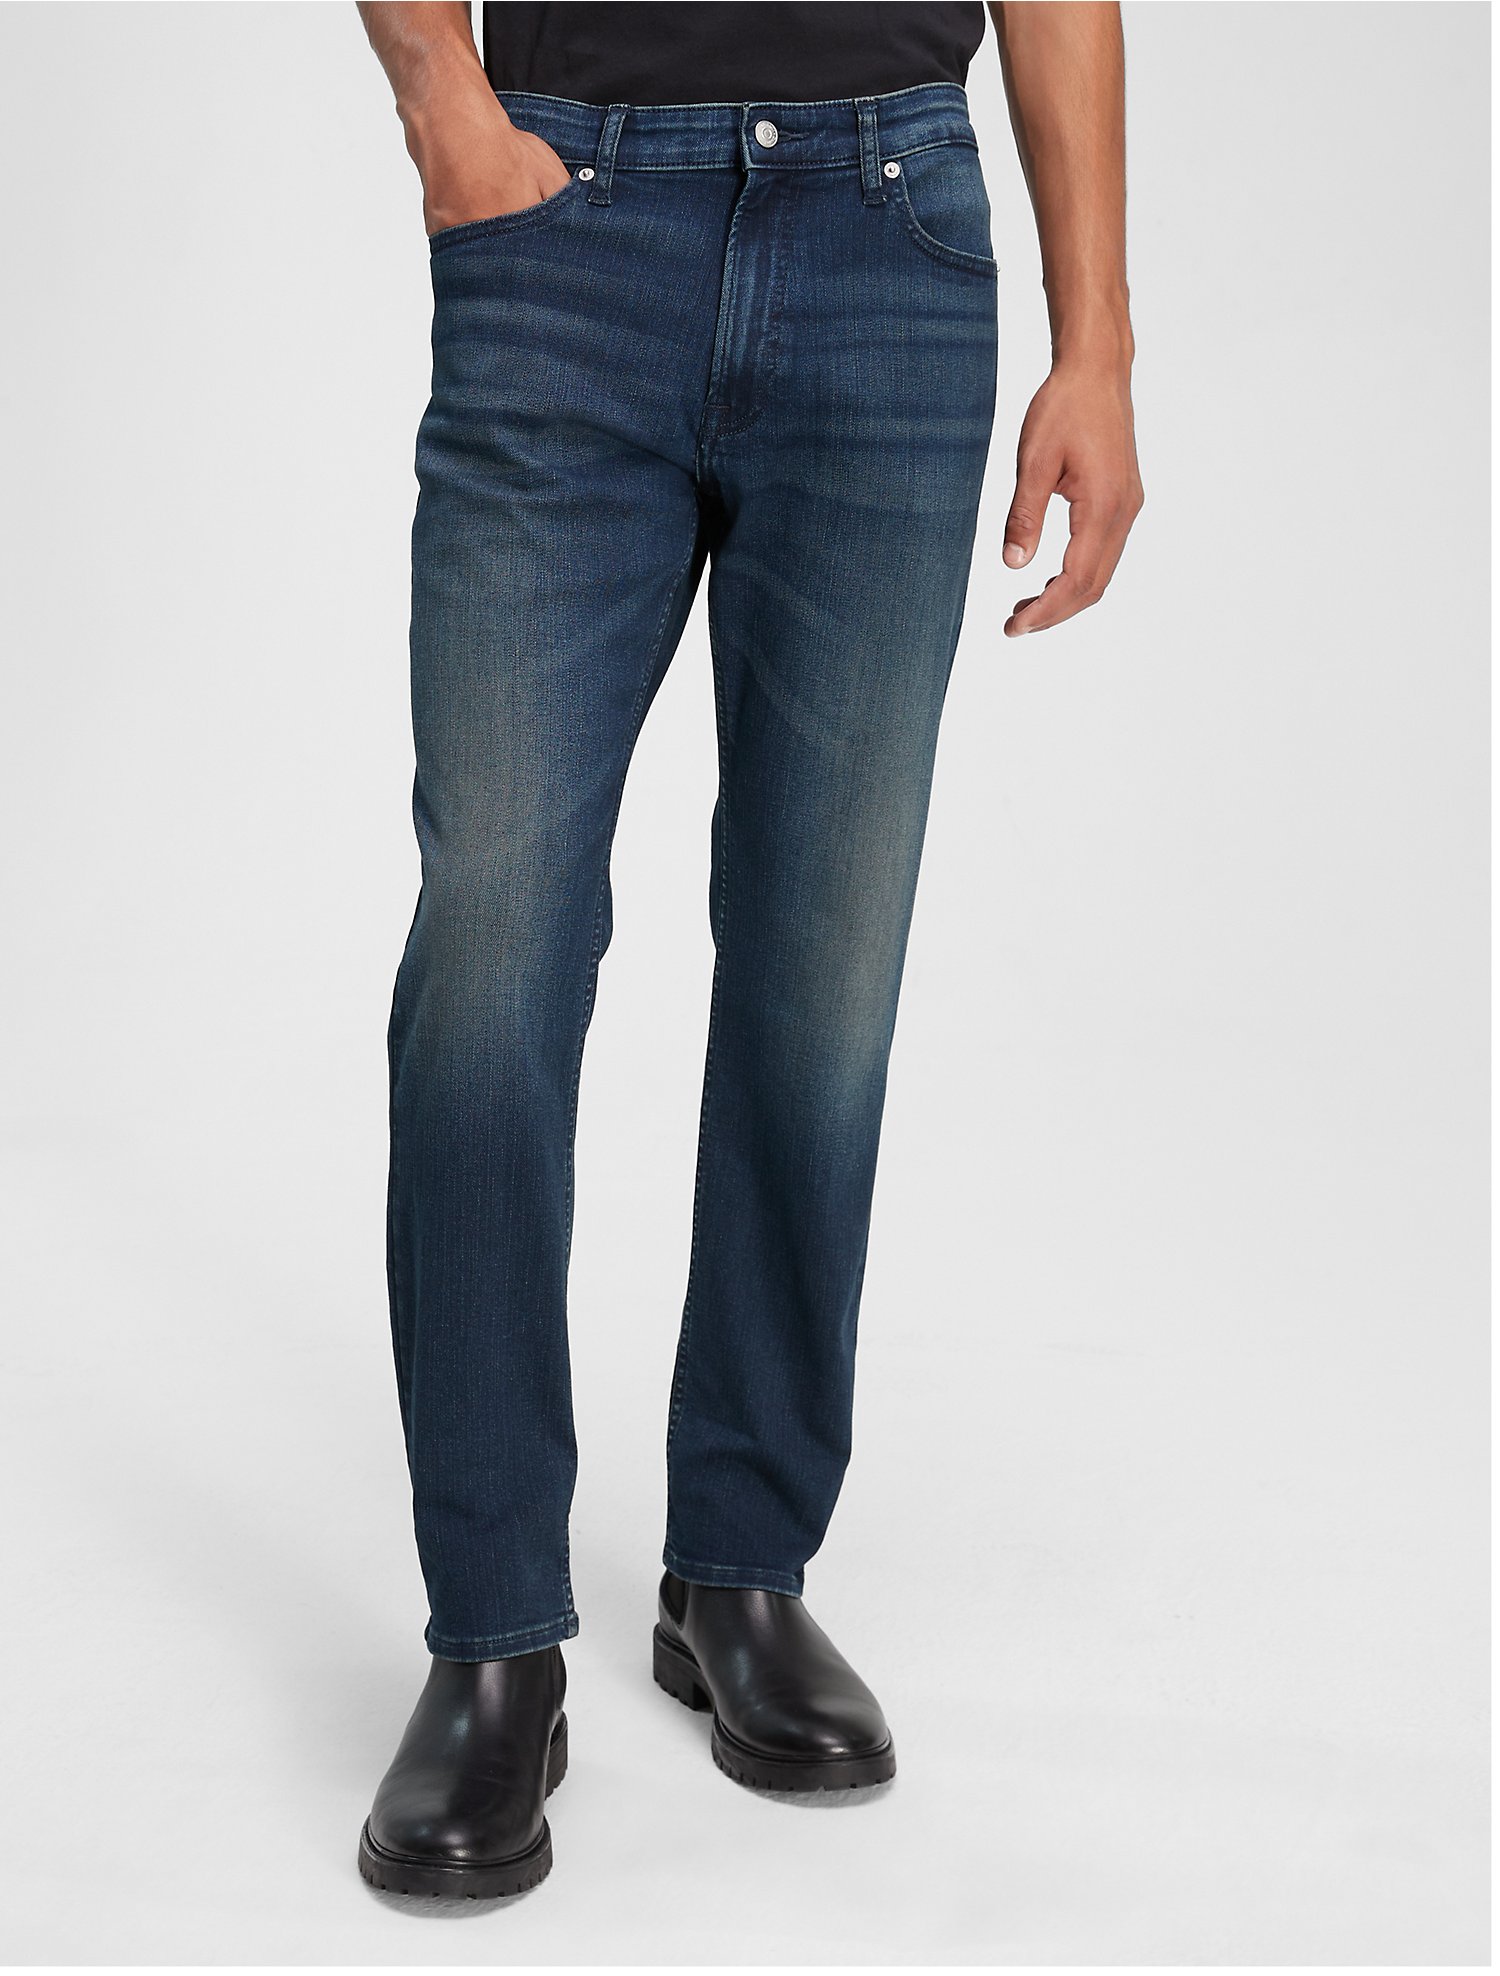 Introducir 63+ imagen do calvin klein jeans run small